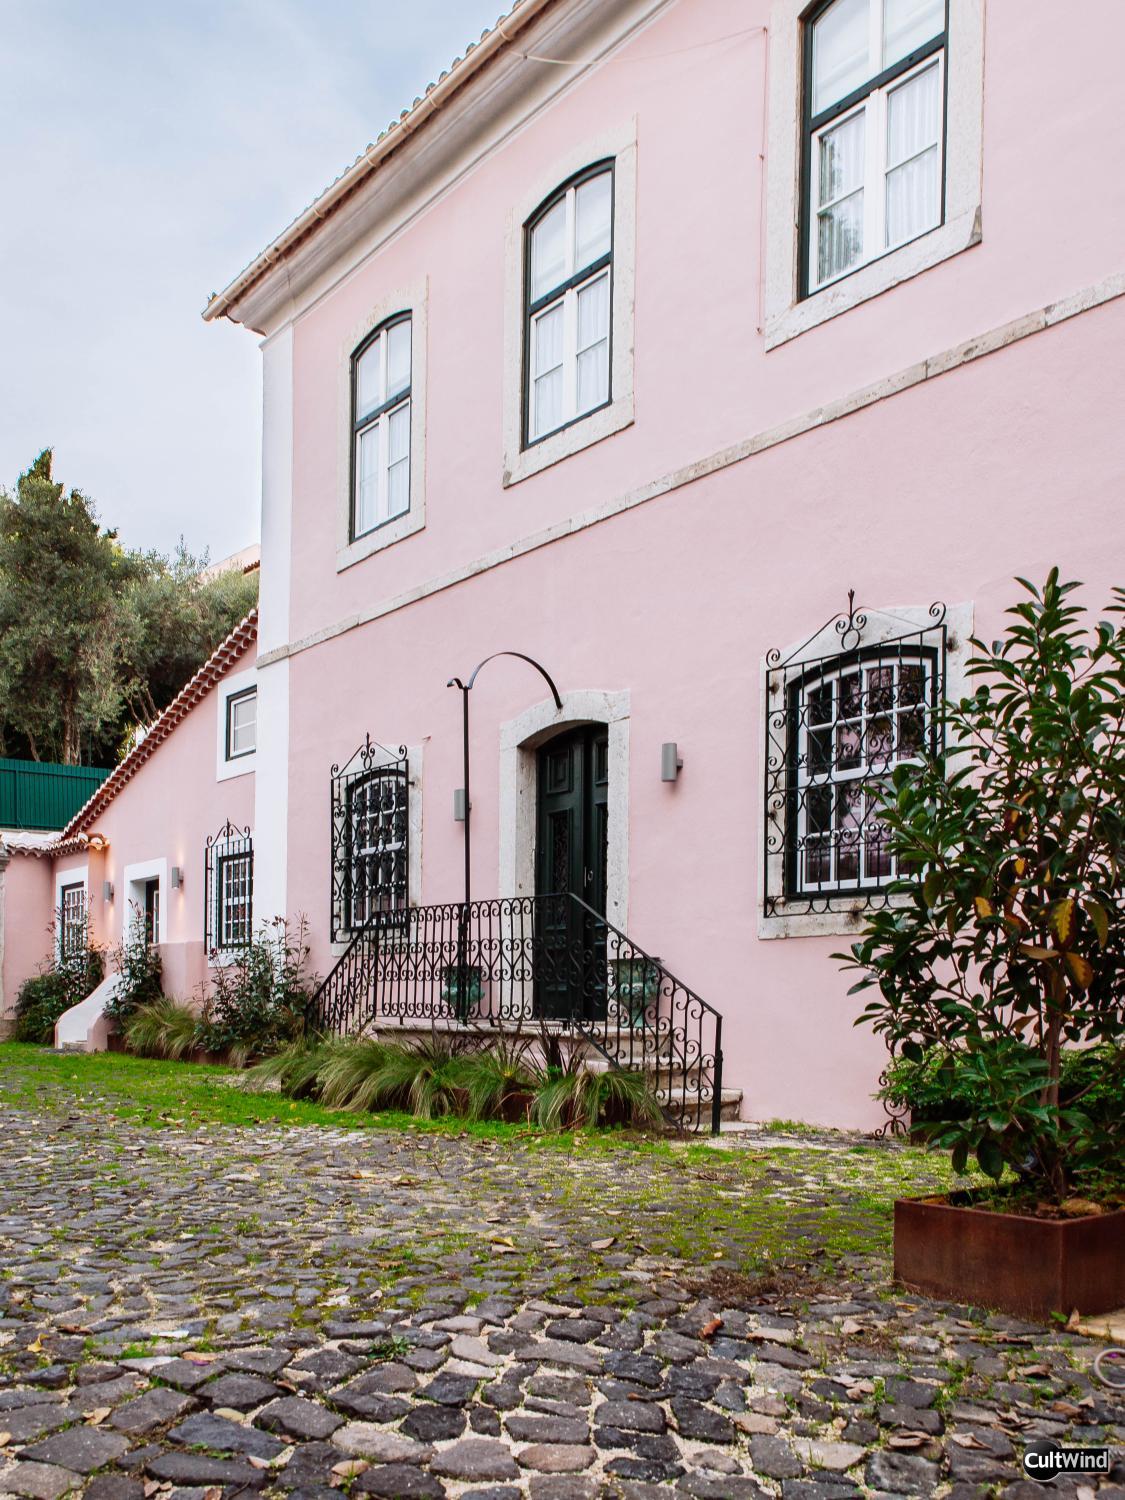 Villa Marques near Tejo River, Oeiras